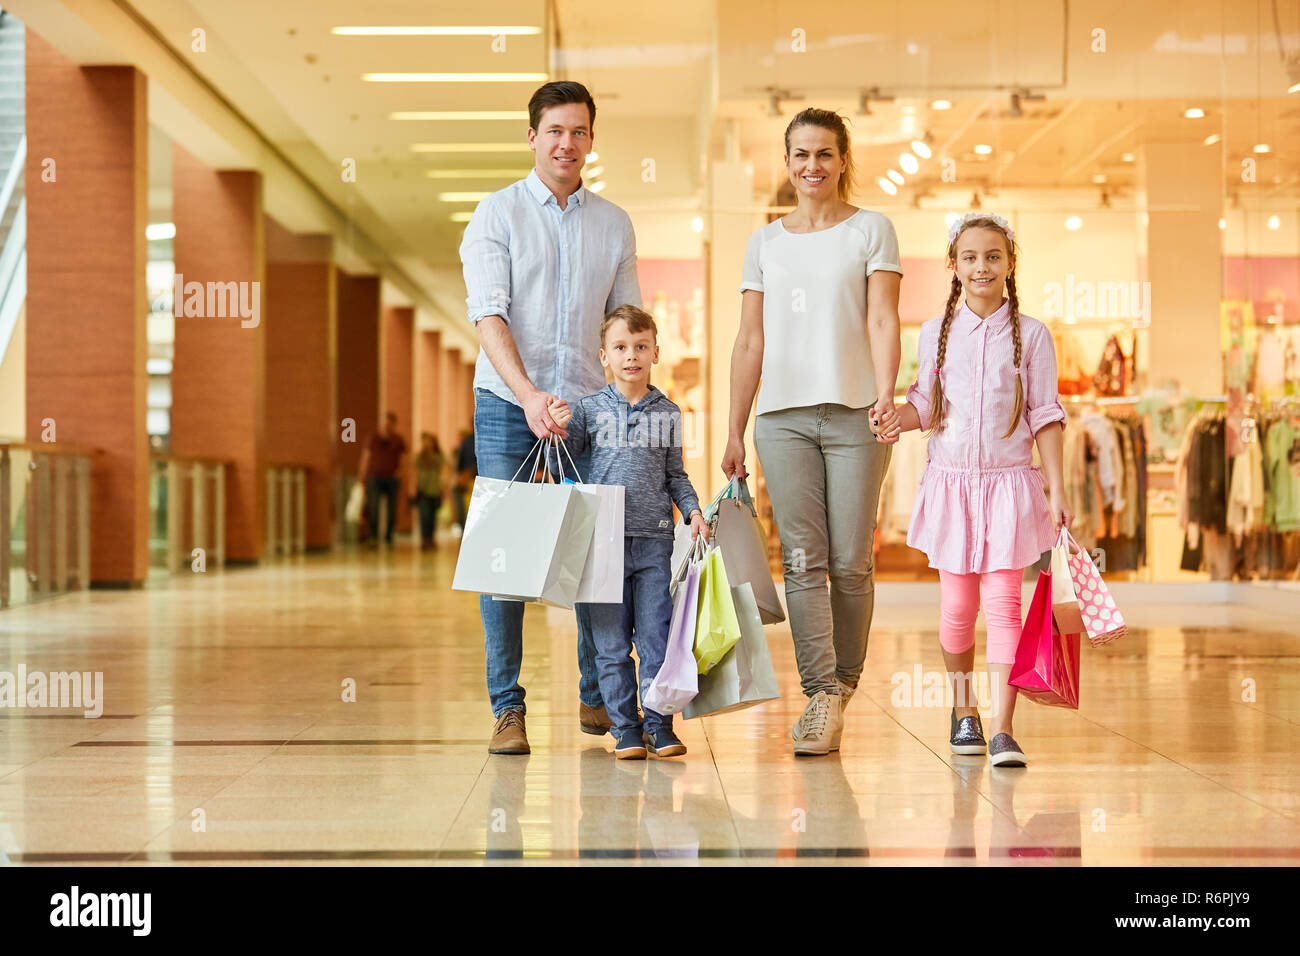 The are going shopping walking. Семья шоппинг. Фотосессия в торговом центре семья. Семья с покупками. ТЦ семья.